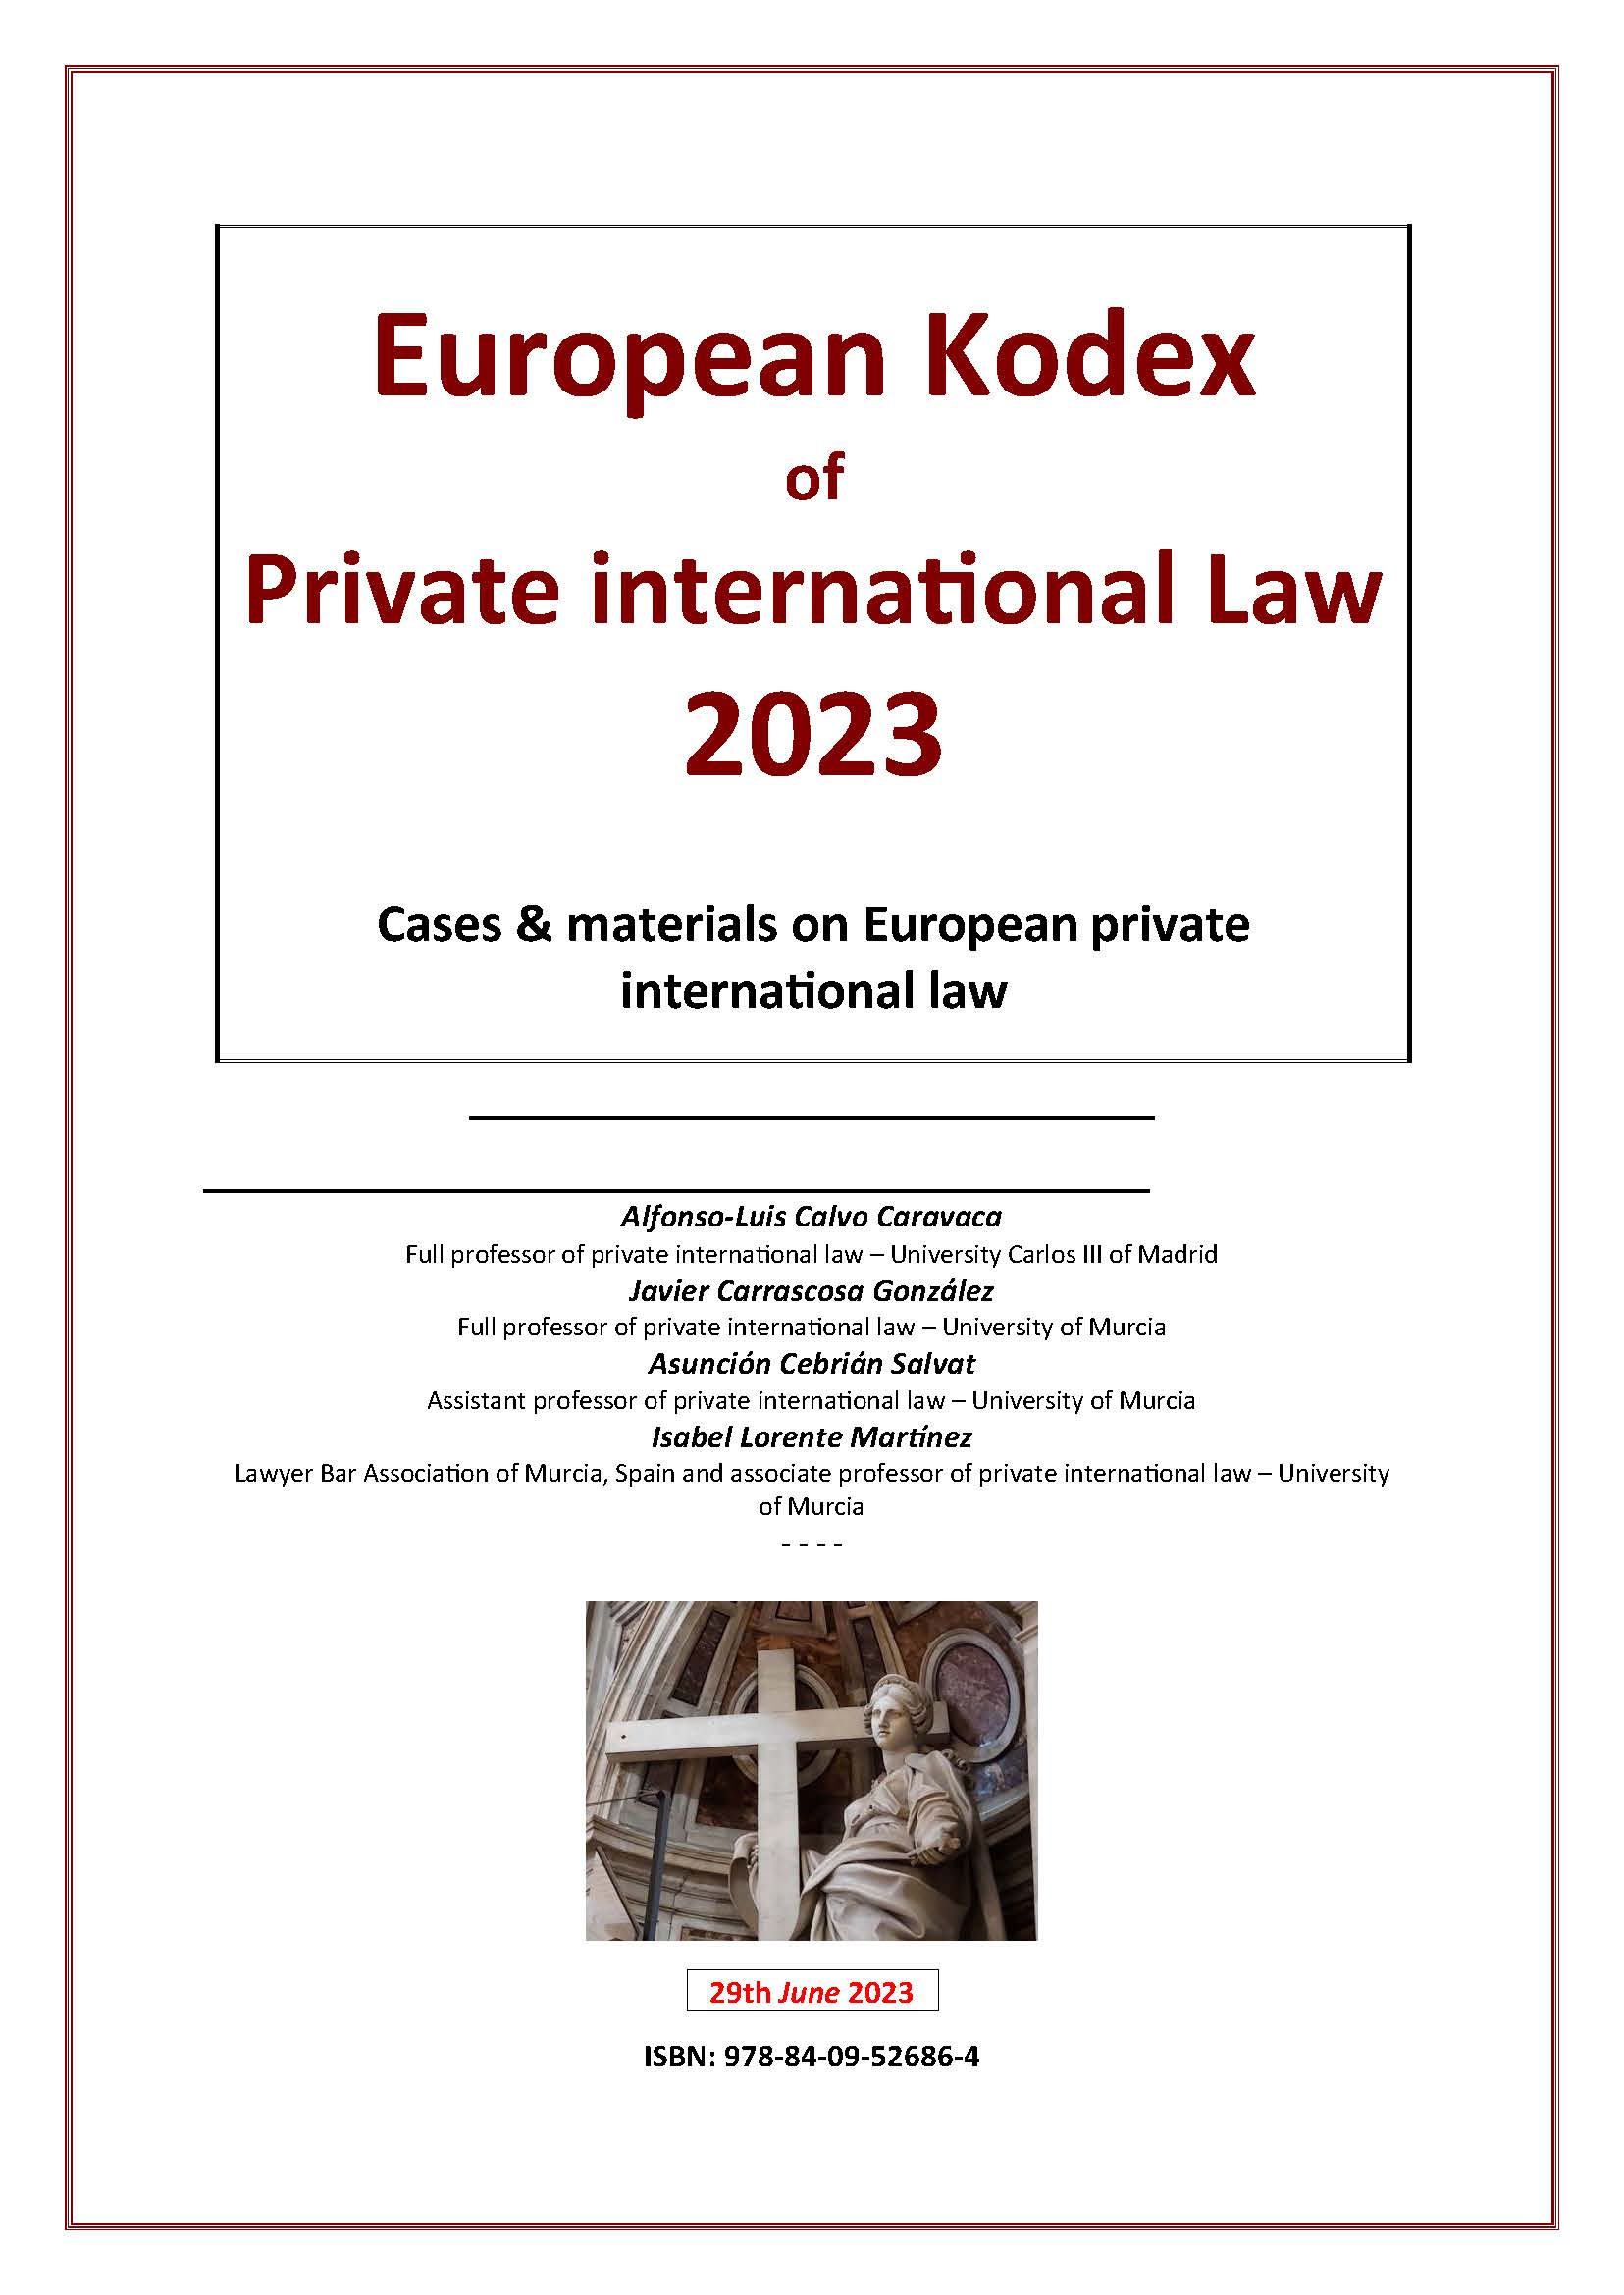 Imagen de portada del libro European Kodex of Private international Law